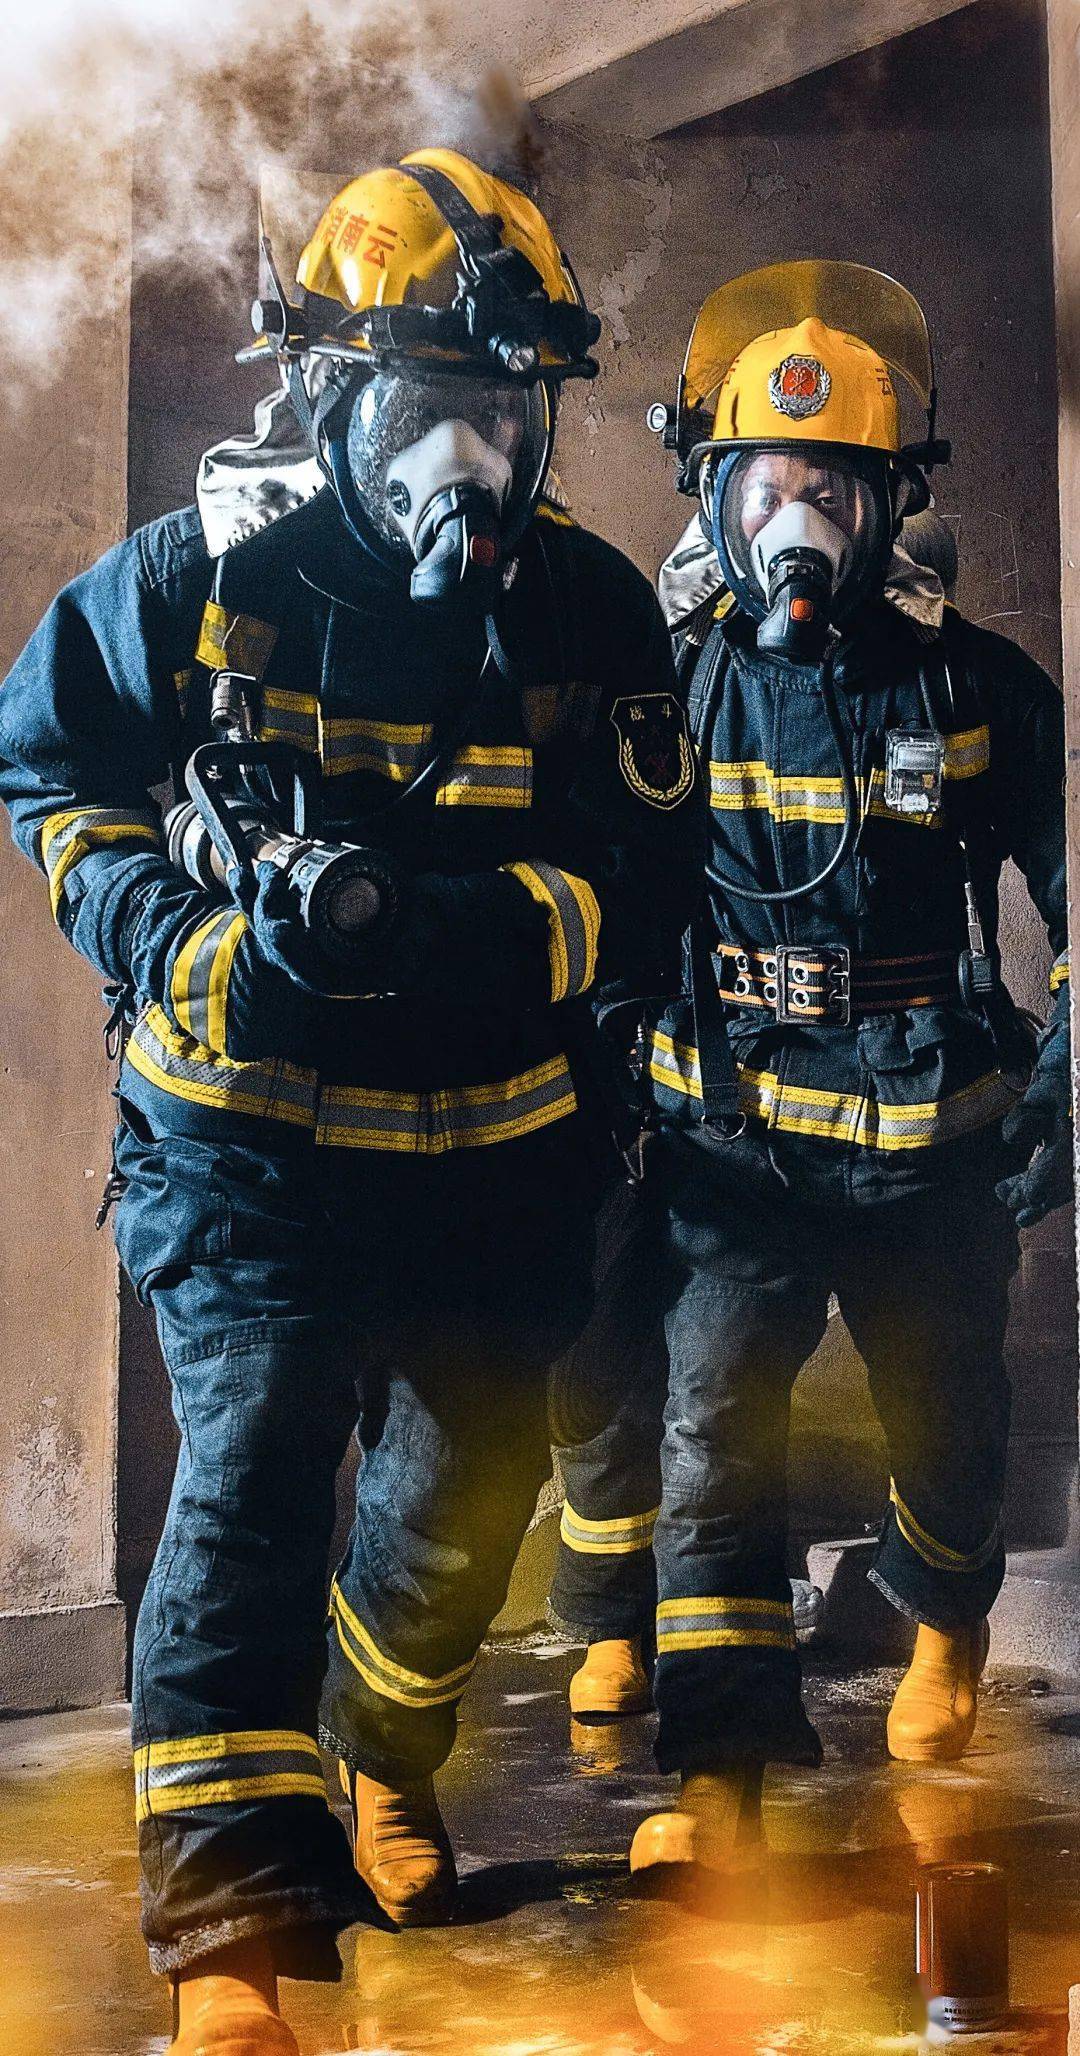 一场火灾中,消防员们都在团队里担任什么角色呢